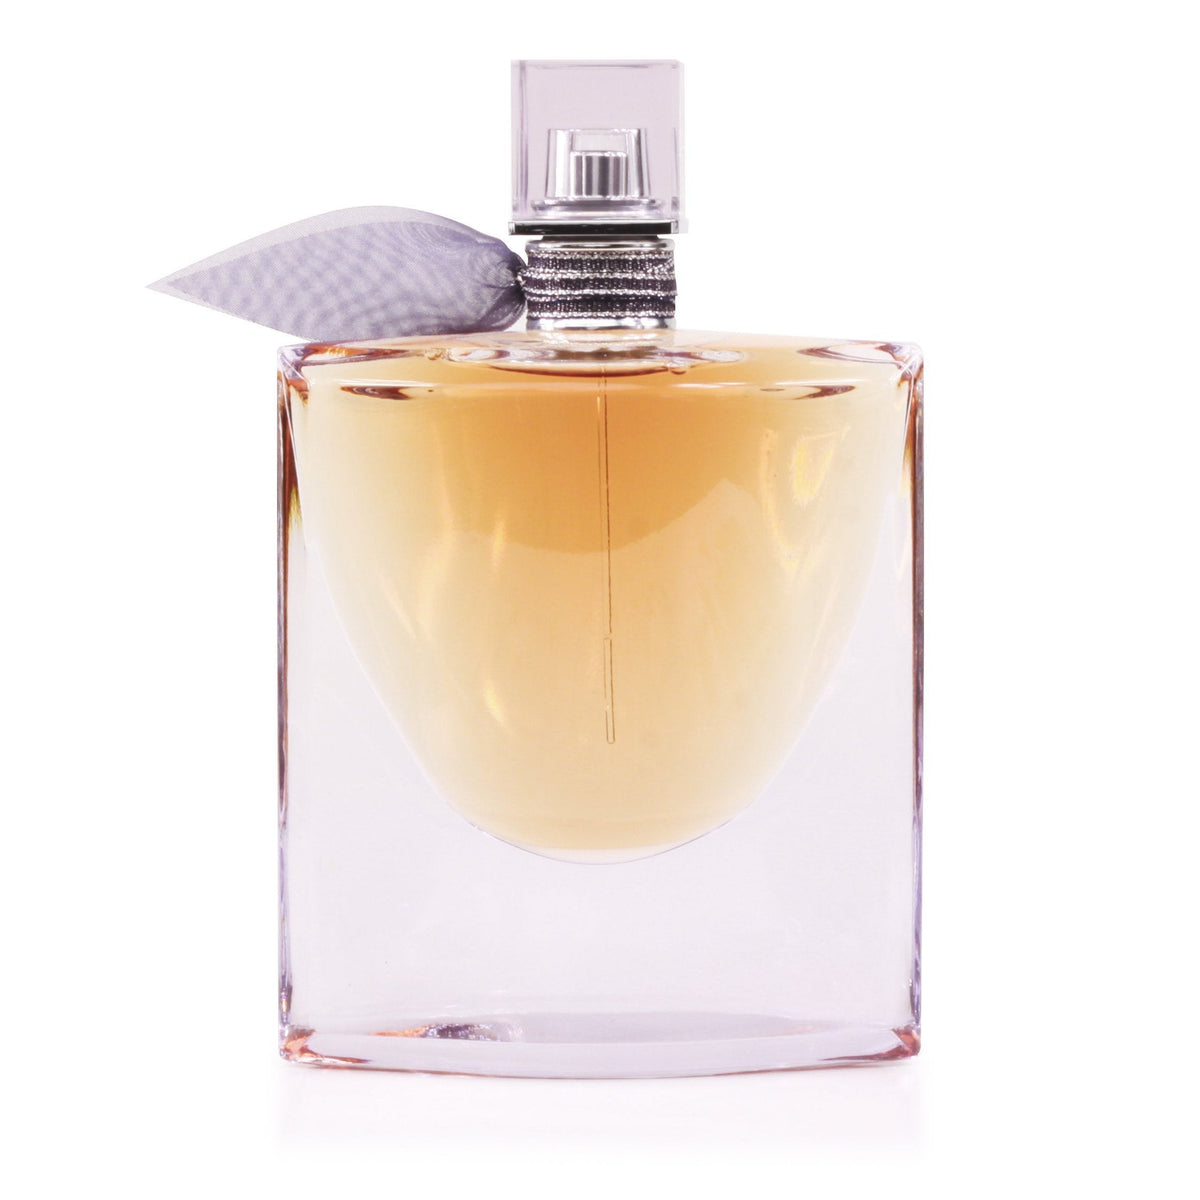 La Vie Est Belle Intense Eau de Parfum Spray for Women by Lancome 2.5 oz.